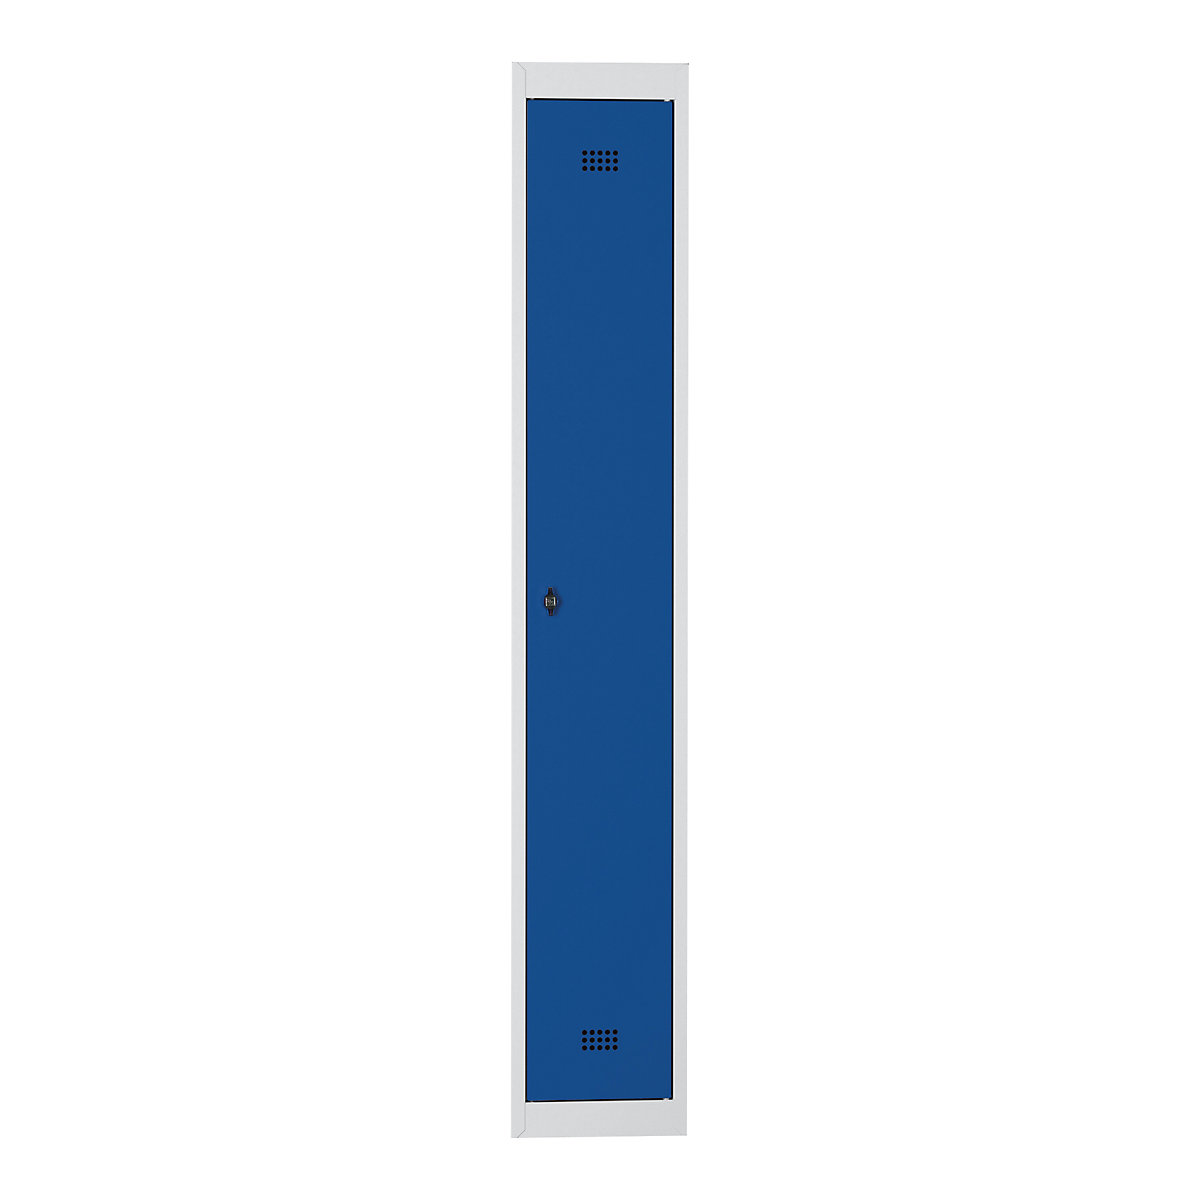 Ocelová skříňka – Wolf, s vypalovaným nátěrem, 1 oddíl, výška 1700 mm, šířka 300 mm, 1 police na klobouky, 1 tyč na oděvy, přístavný prvek, světlá šedá / enciánová modrá